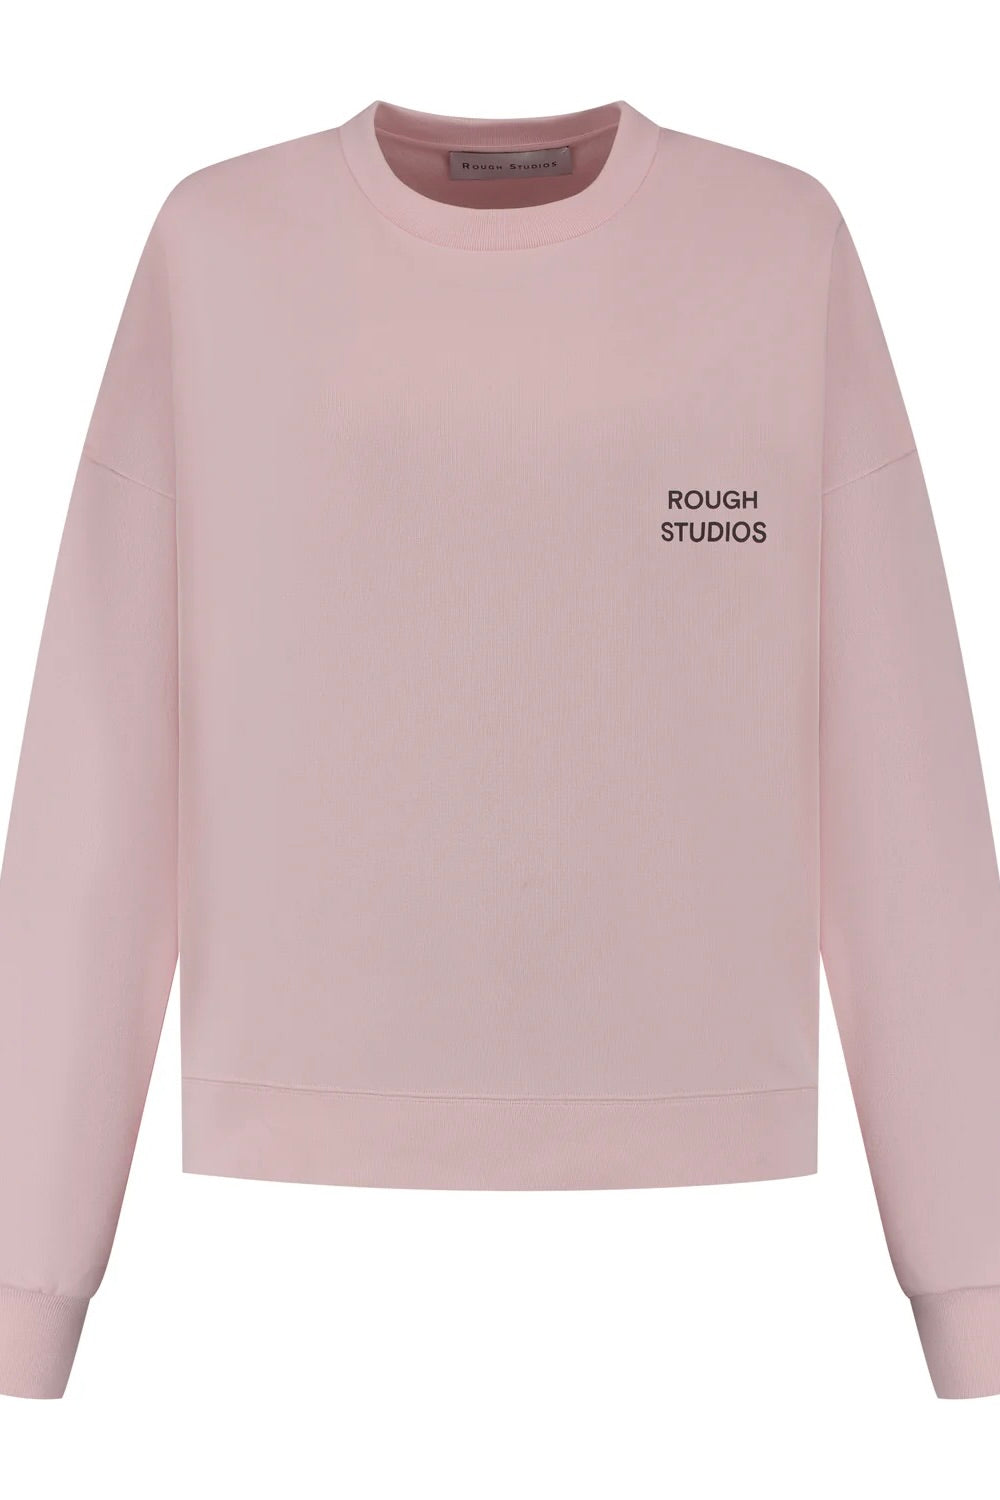 Rough Studio Tennis Sweatshirt Pink